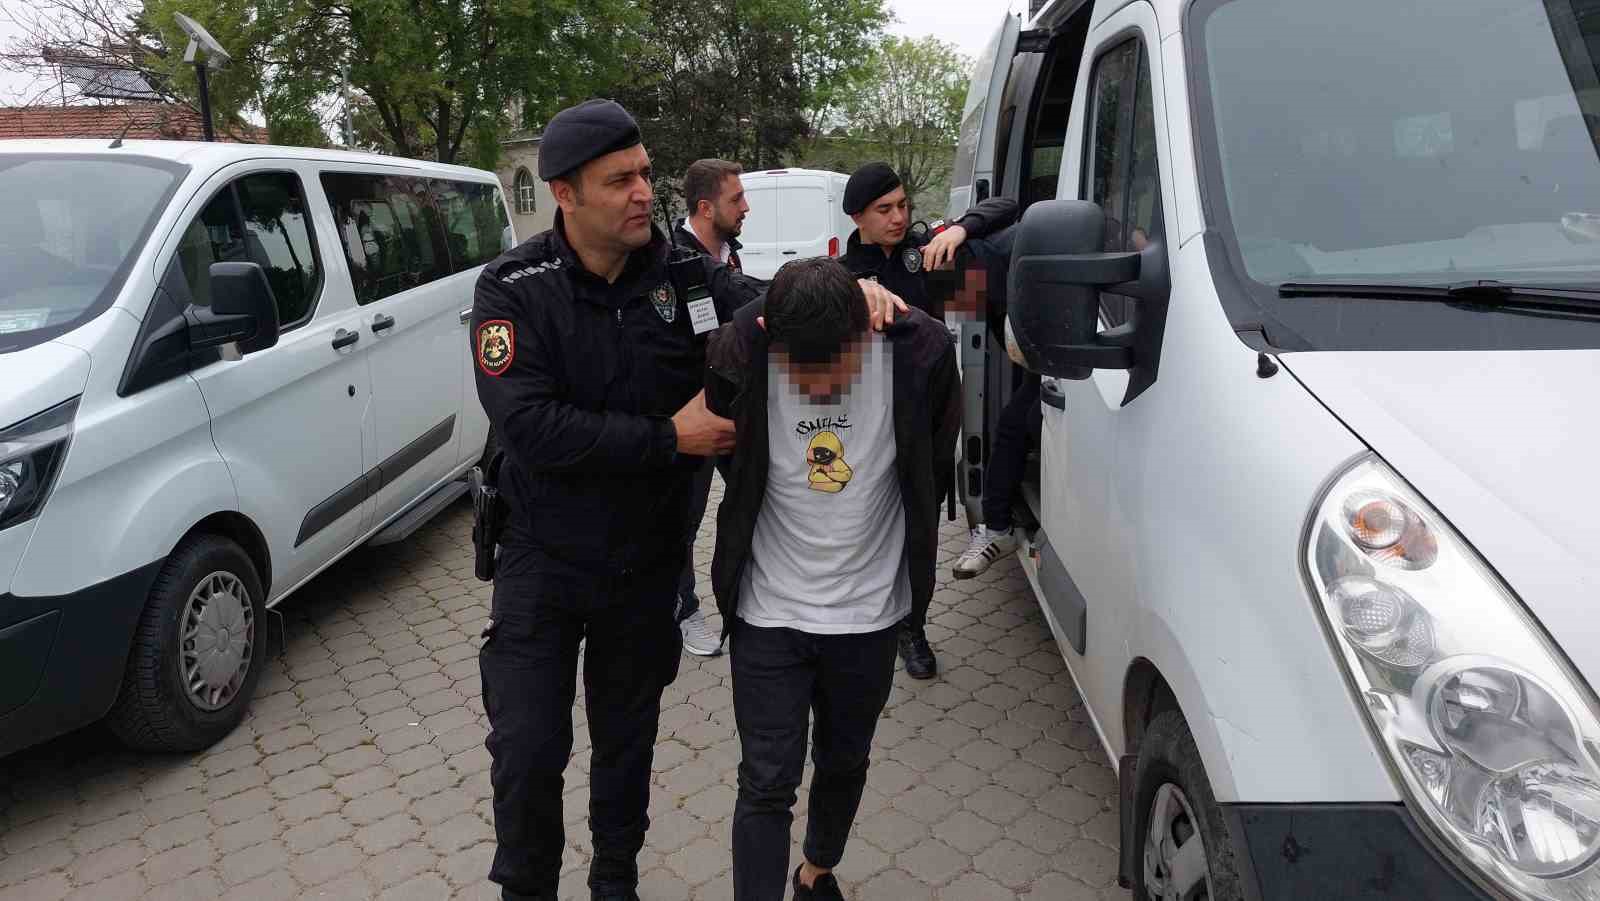 Samsun’da uyuşturucu operasyonunda gözaltına alınan 7 kişi adliyeye sevk edildi
